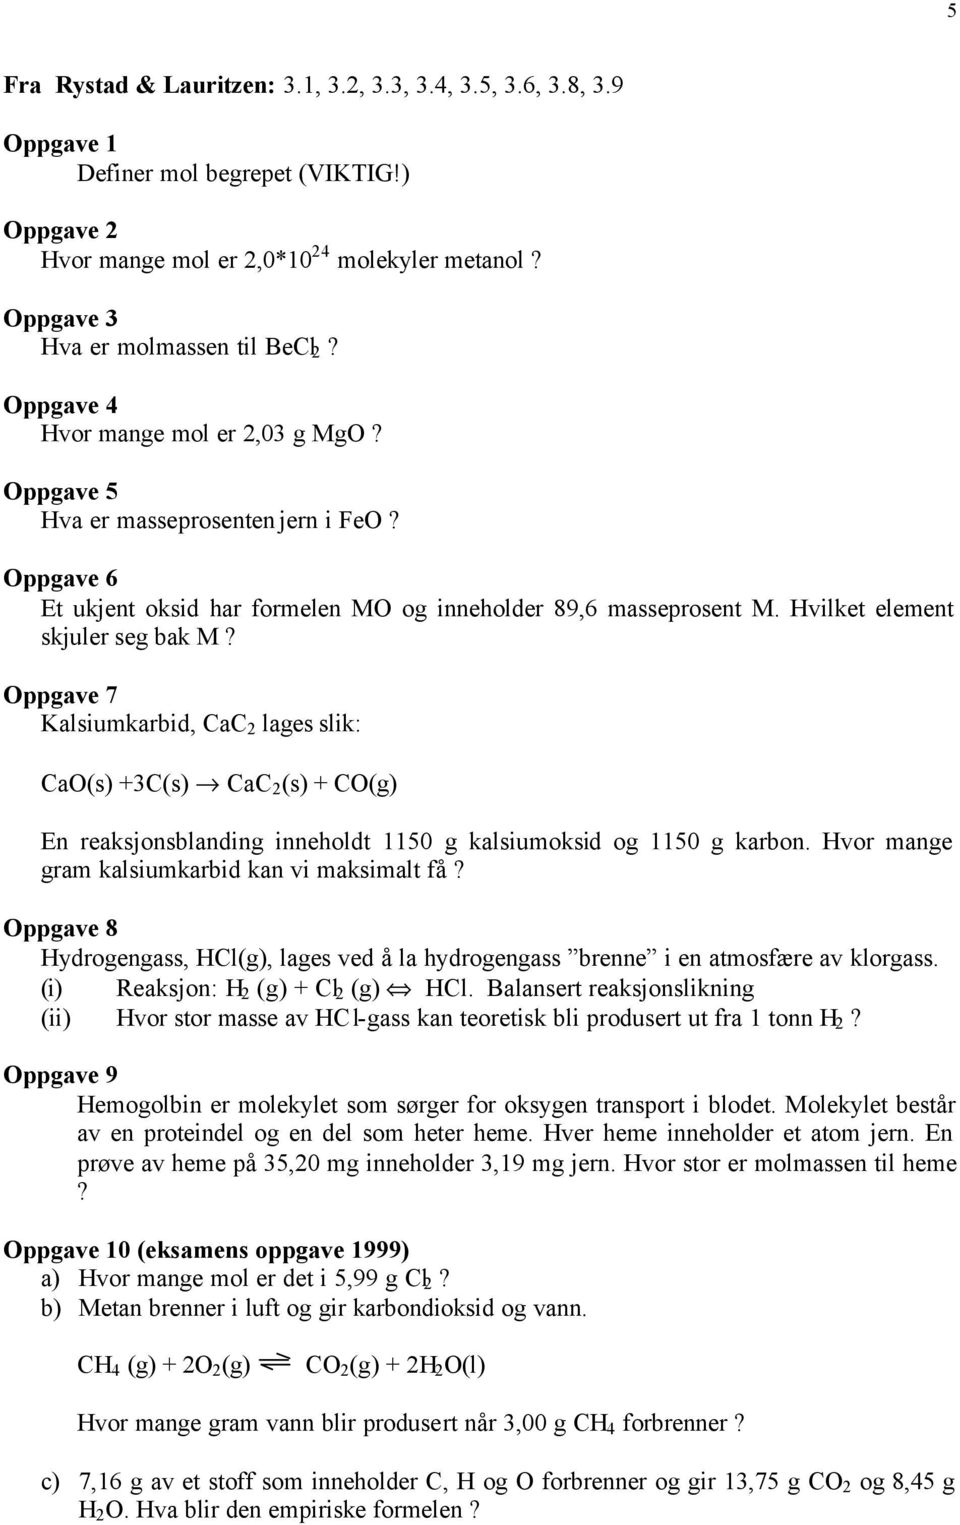 Oppgave 7 Kalsiumkarbid, CaC 2 lages slik: CaO(s) +3C(s) CaC 2 (s) + CO(g) En reaksjonsblanding inneholdt 1150 g kalsiumoksid og 1150 g karbon. Hvor mange gram kalsiumkarbid kan vi maksimalt få?